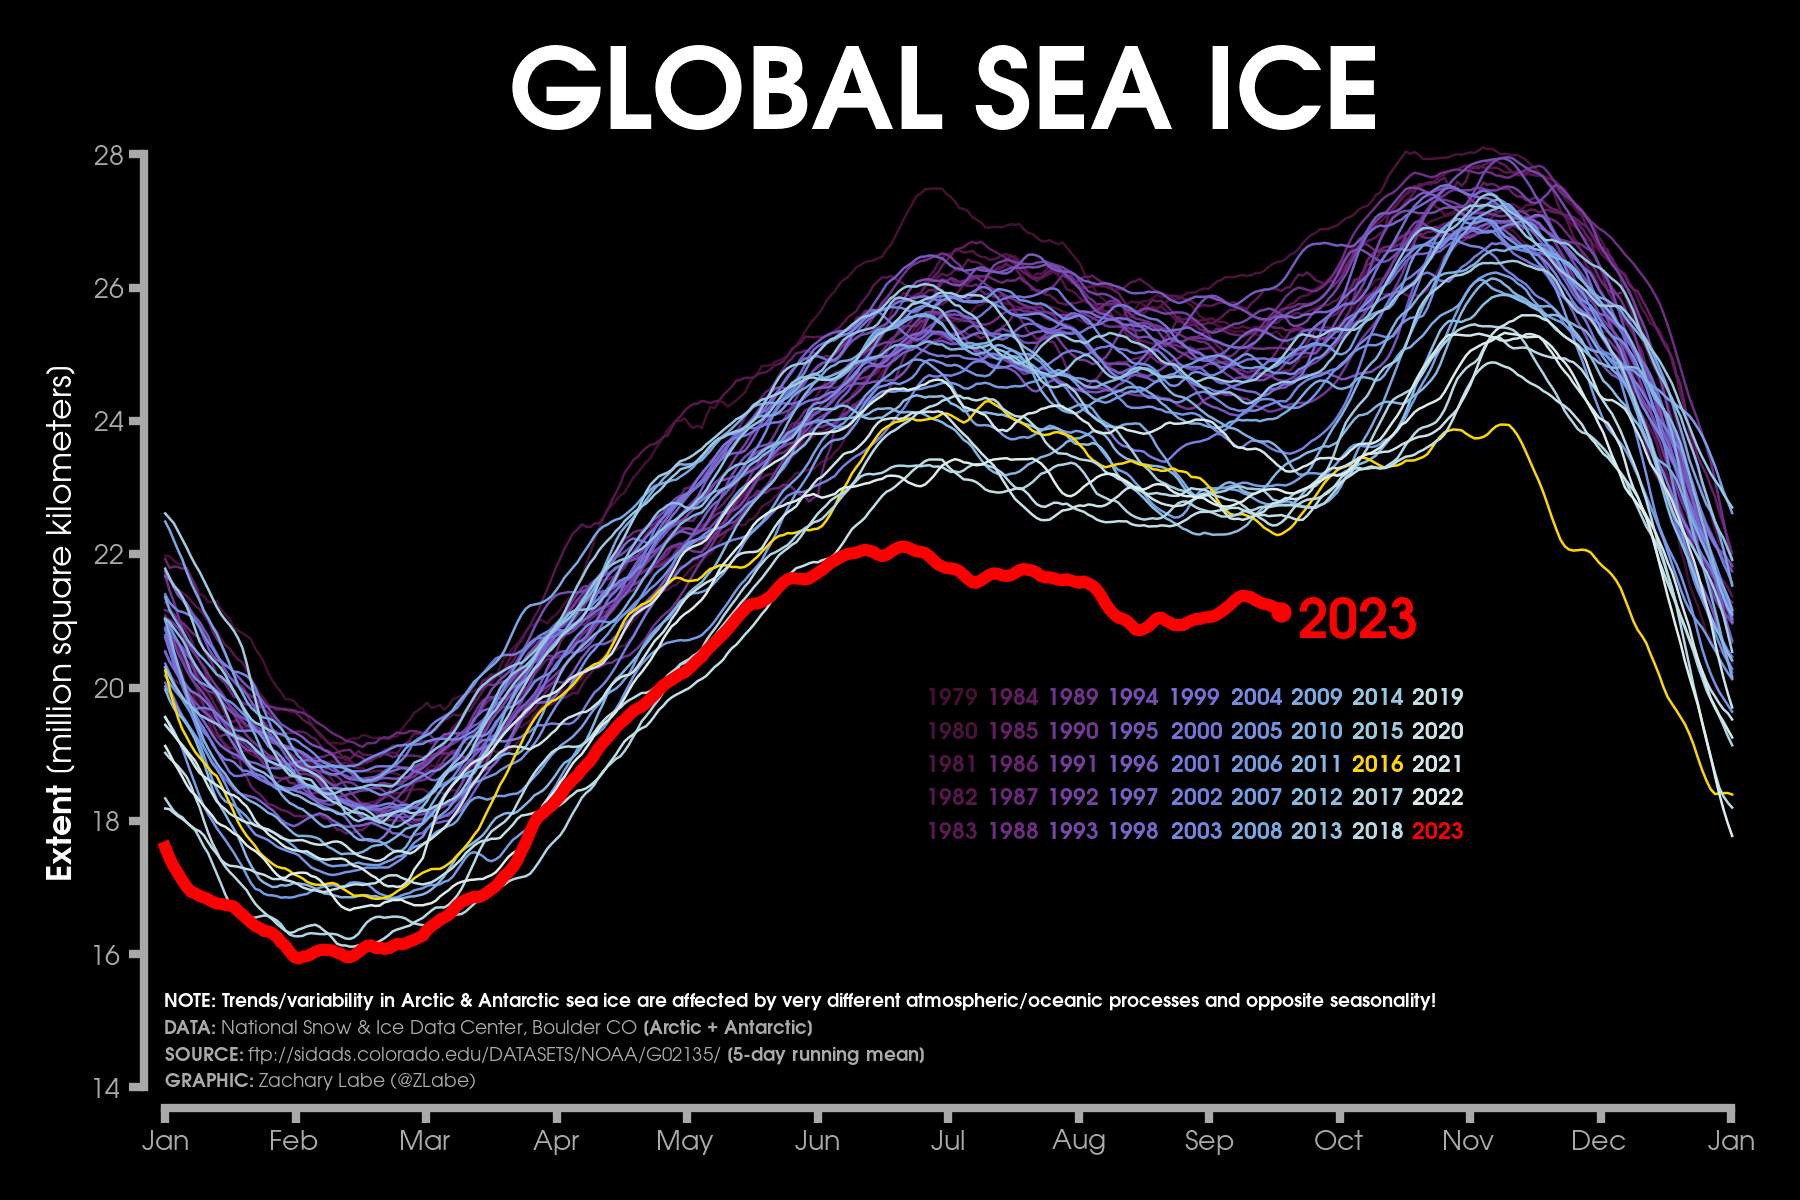 Fig. 4: Extension globale de la glace de mer en comparaison avec les années précédentes; Source: Zach Labe